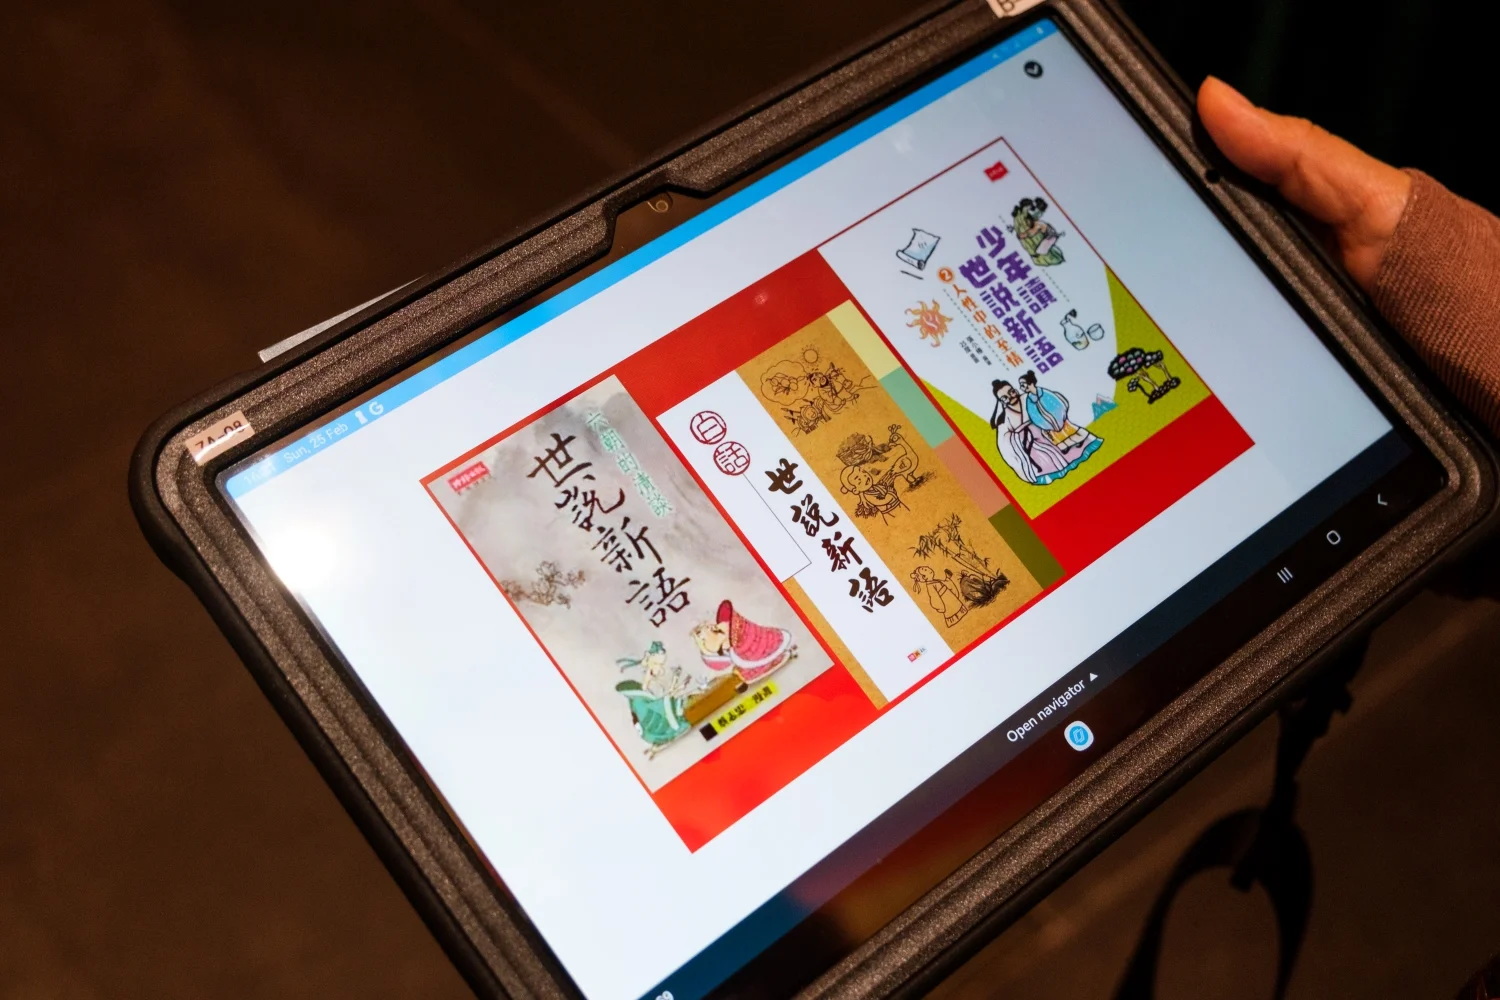 現場以iPad補充與演出篇章相關的知識，並與觀眾進行問答遊戲互動。